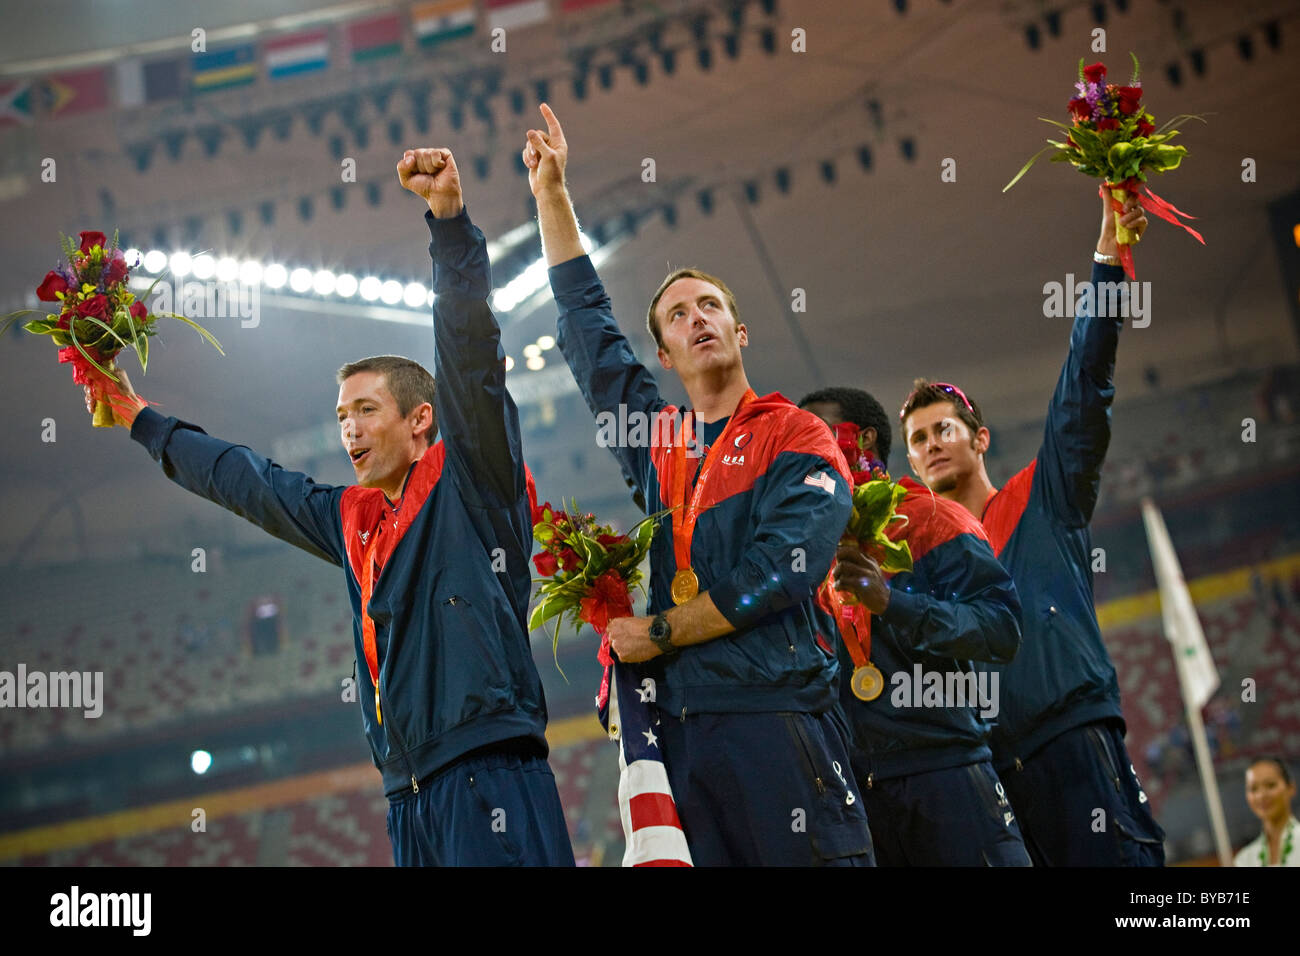 USA-Team feiern auf dem Podium mit ihren Goldmedaillen nach Sieg in die Männer T44 4x100m Staffel Finale Peking 2008 Stockfoto